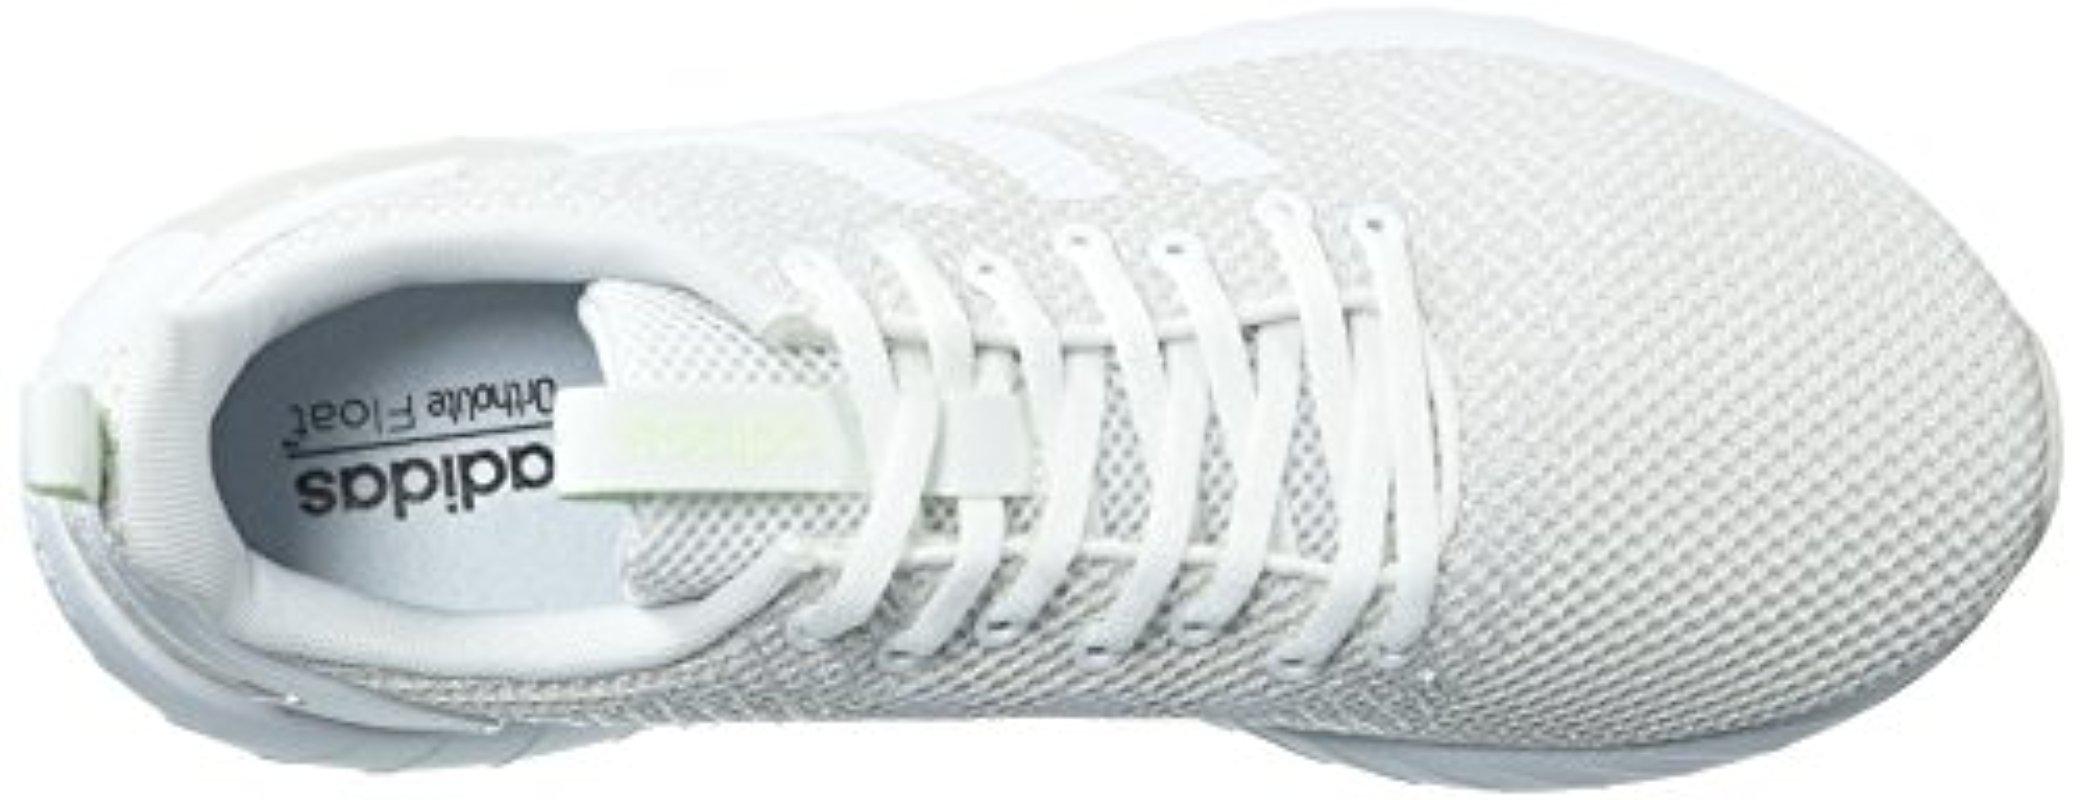 adidas Questar Byd W in White - Save 11 